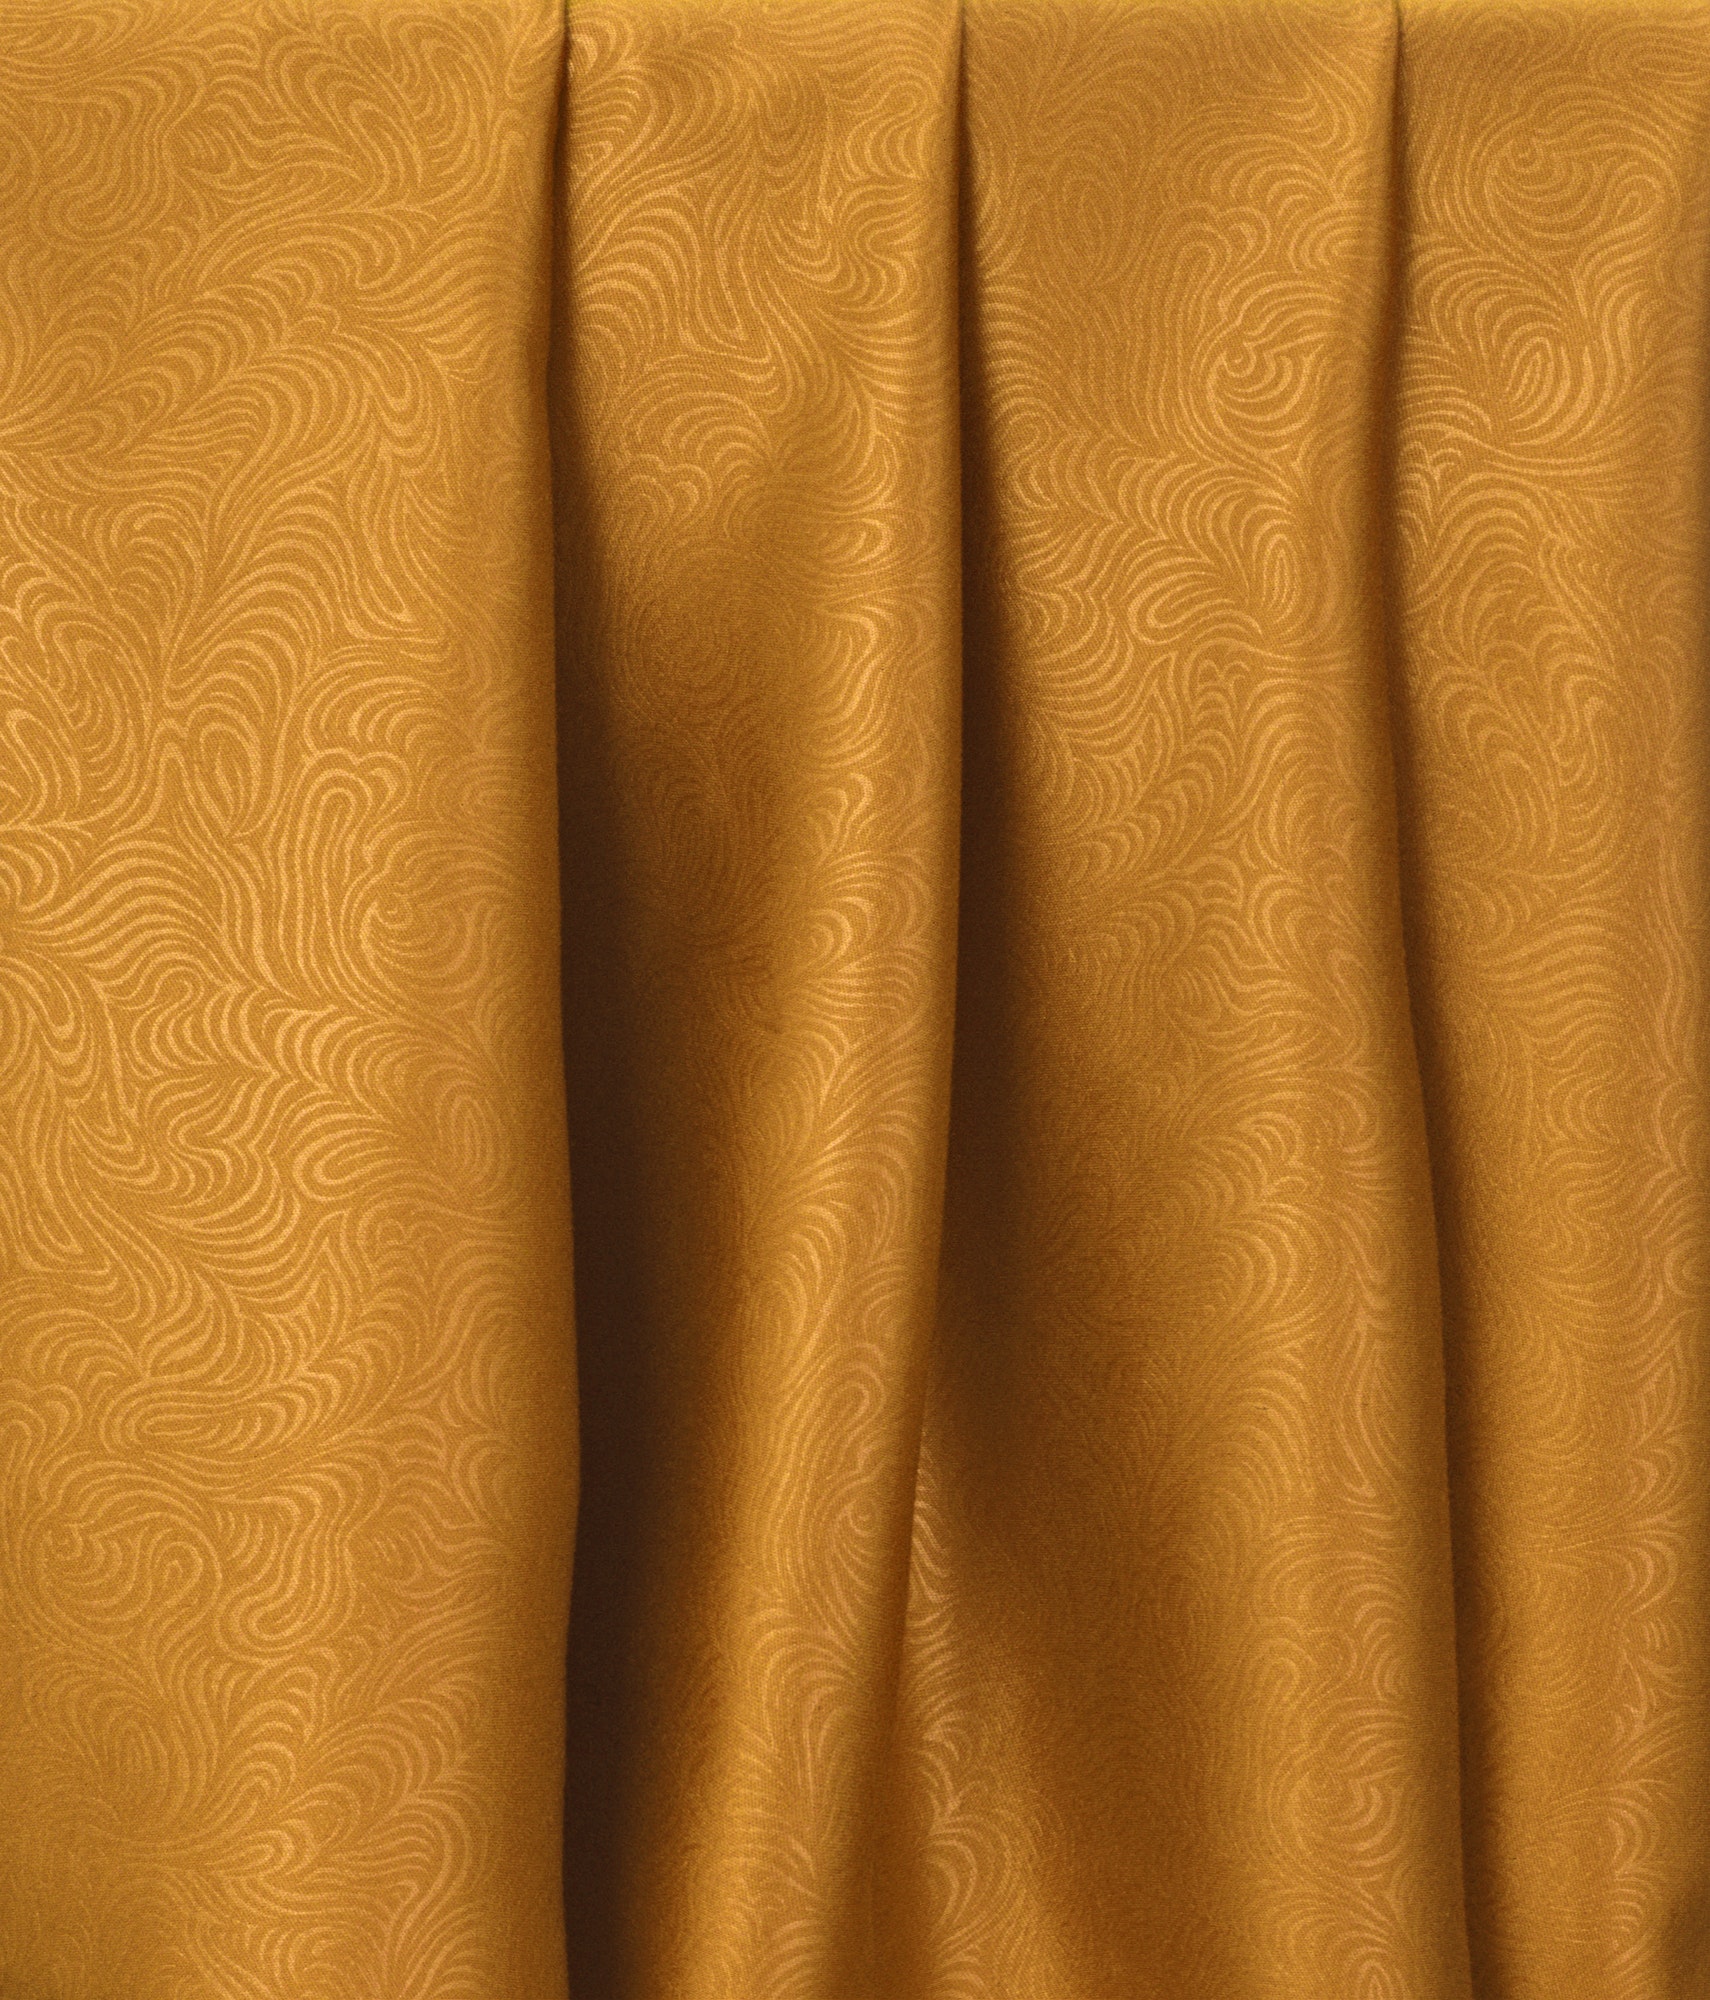 Quels sont les avantages d’opter pour des rideaux dorés ?